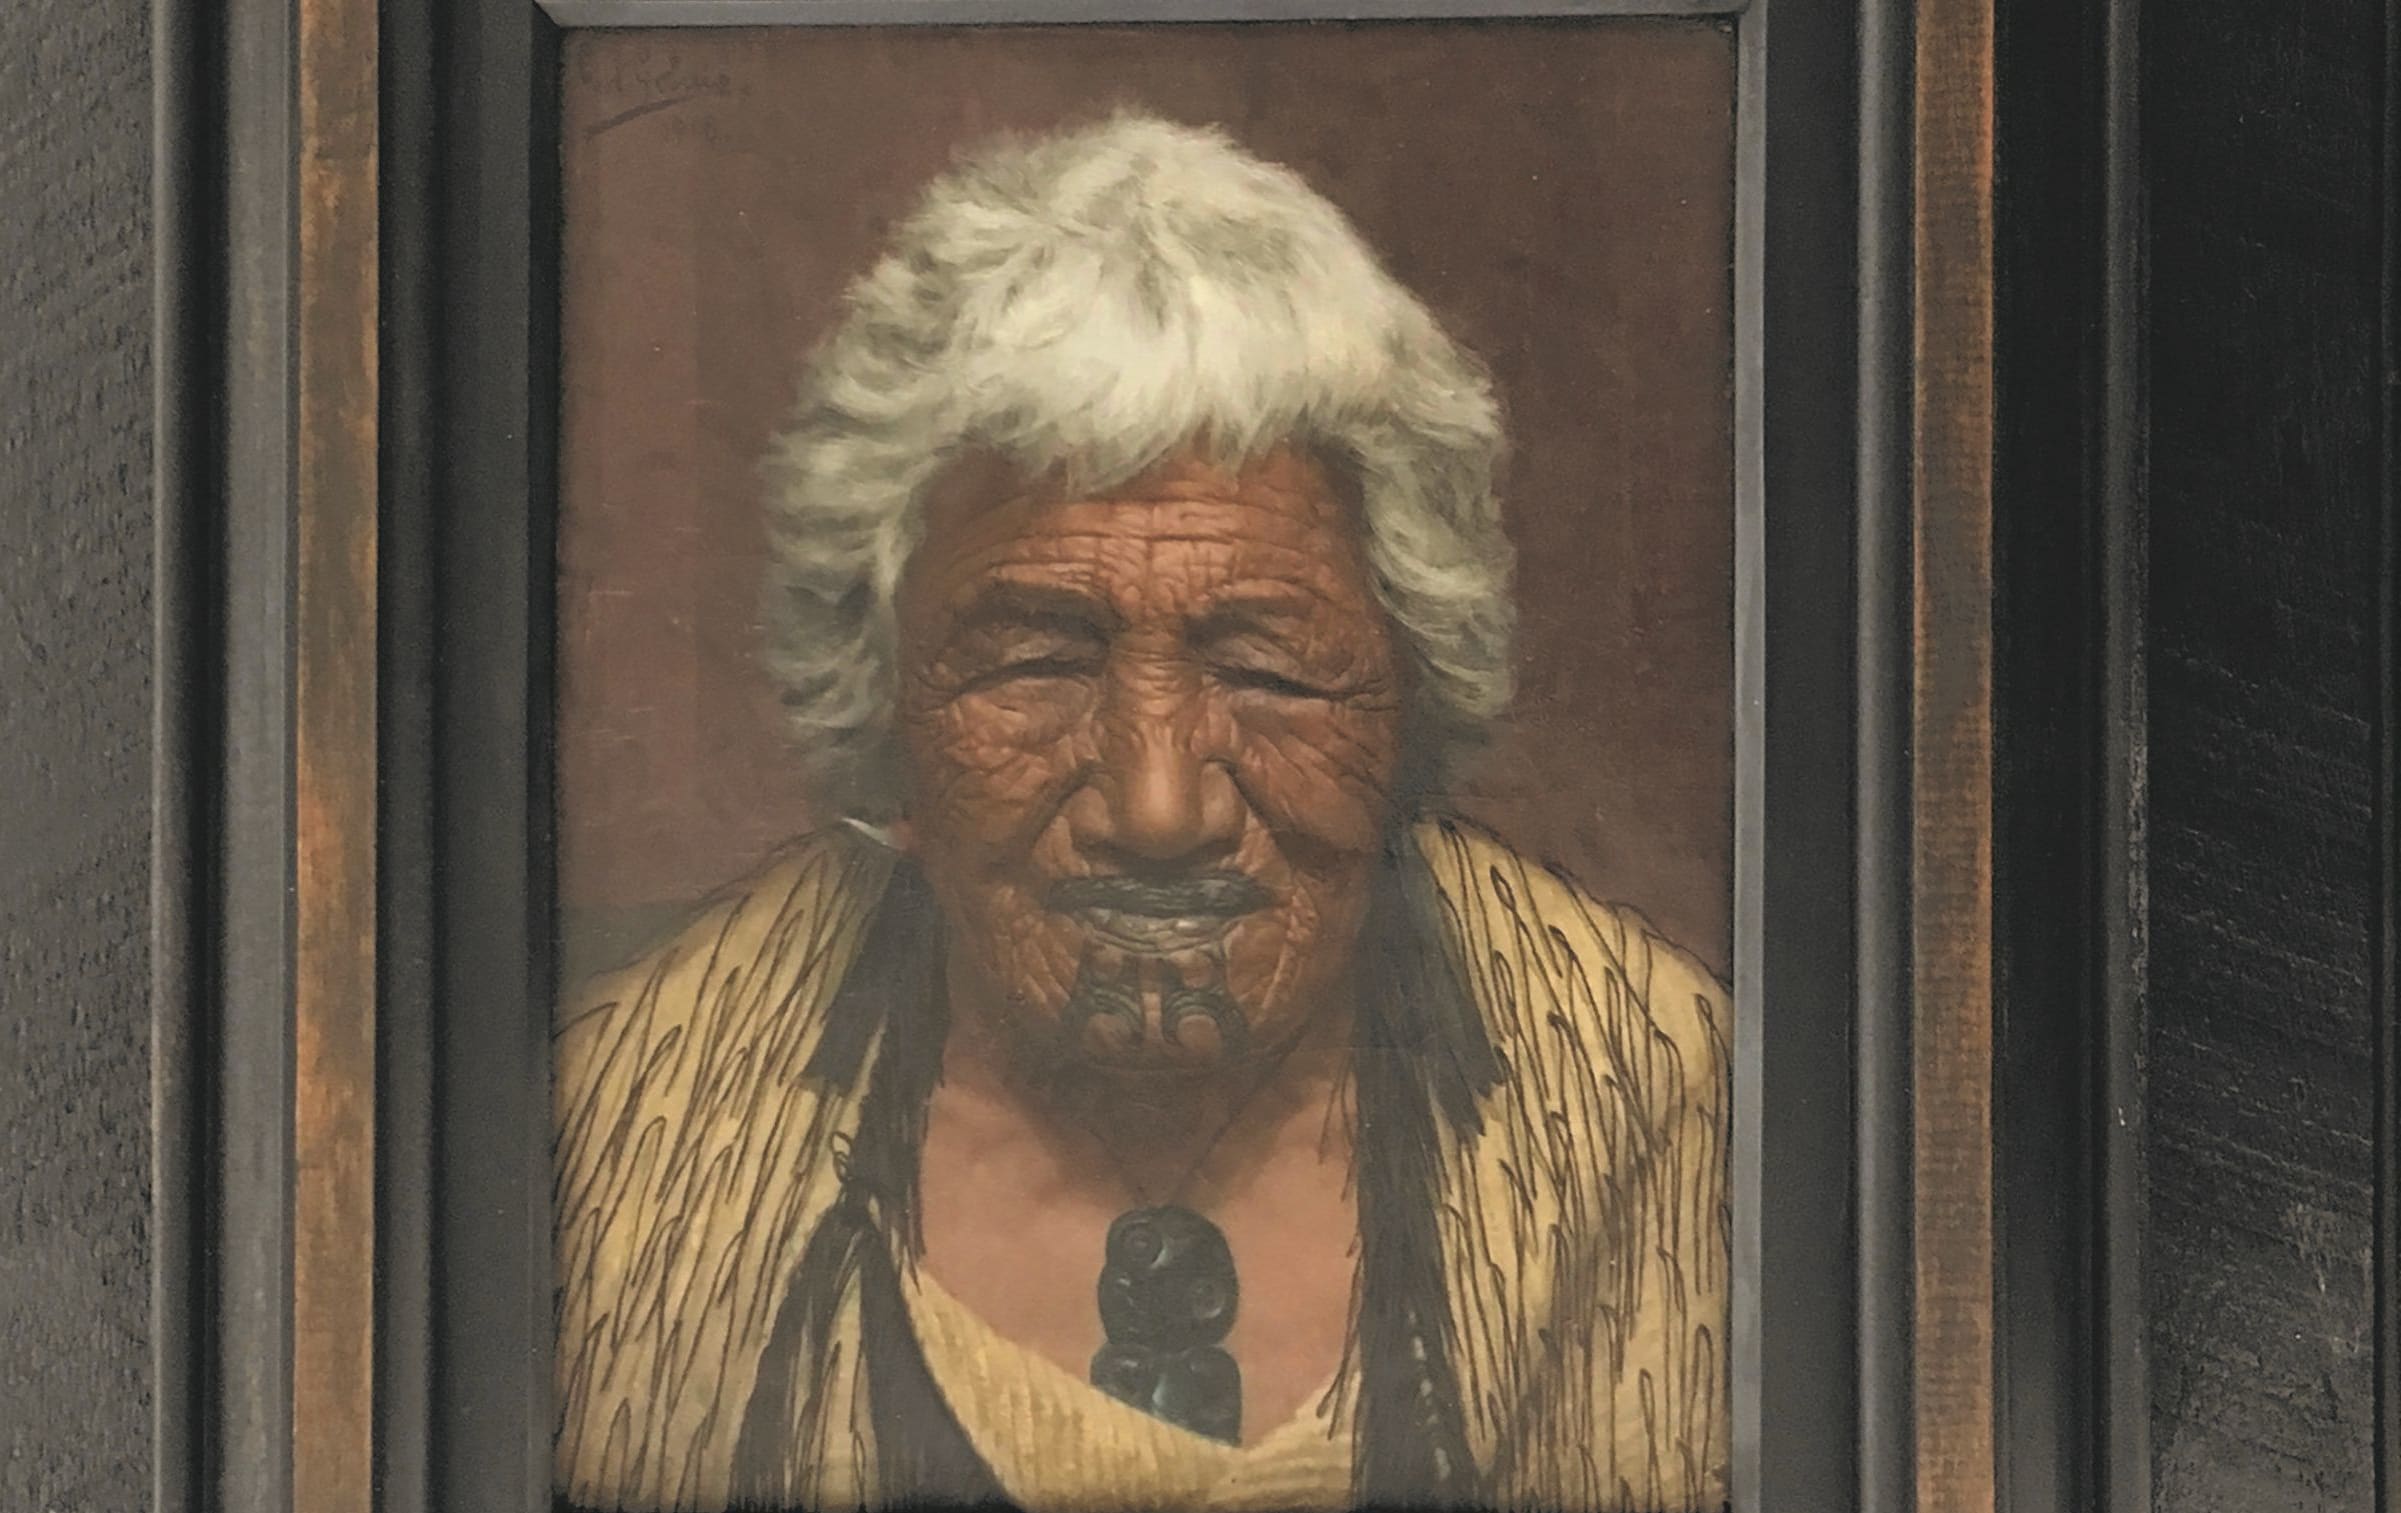 Ahinata Te Rangituatini, also known as Kapi Kapi, dating back to 1918.